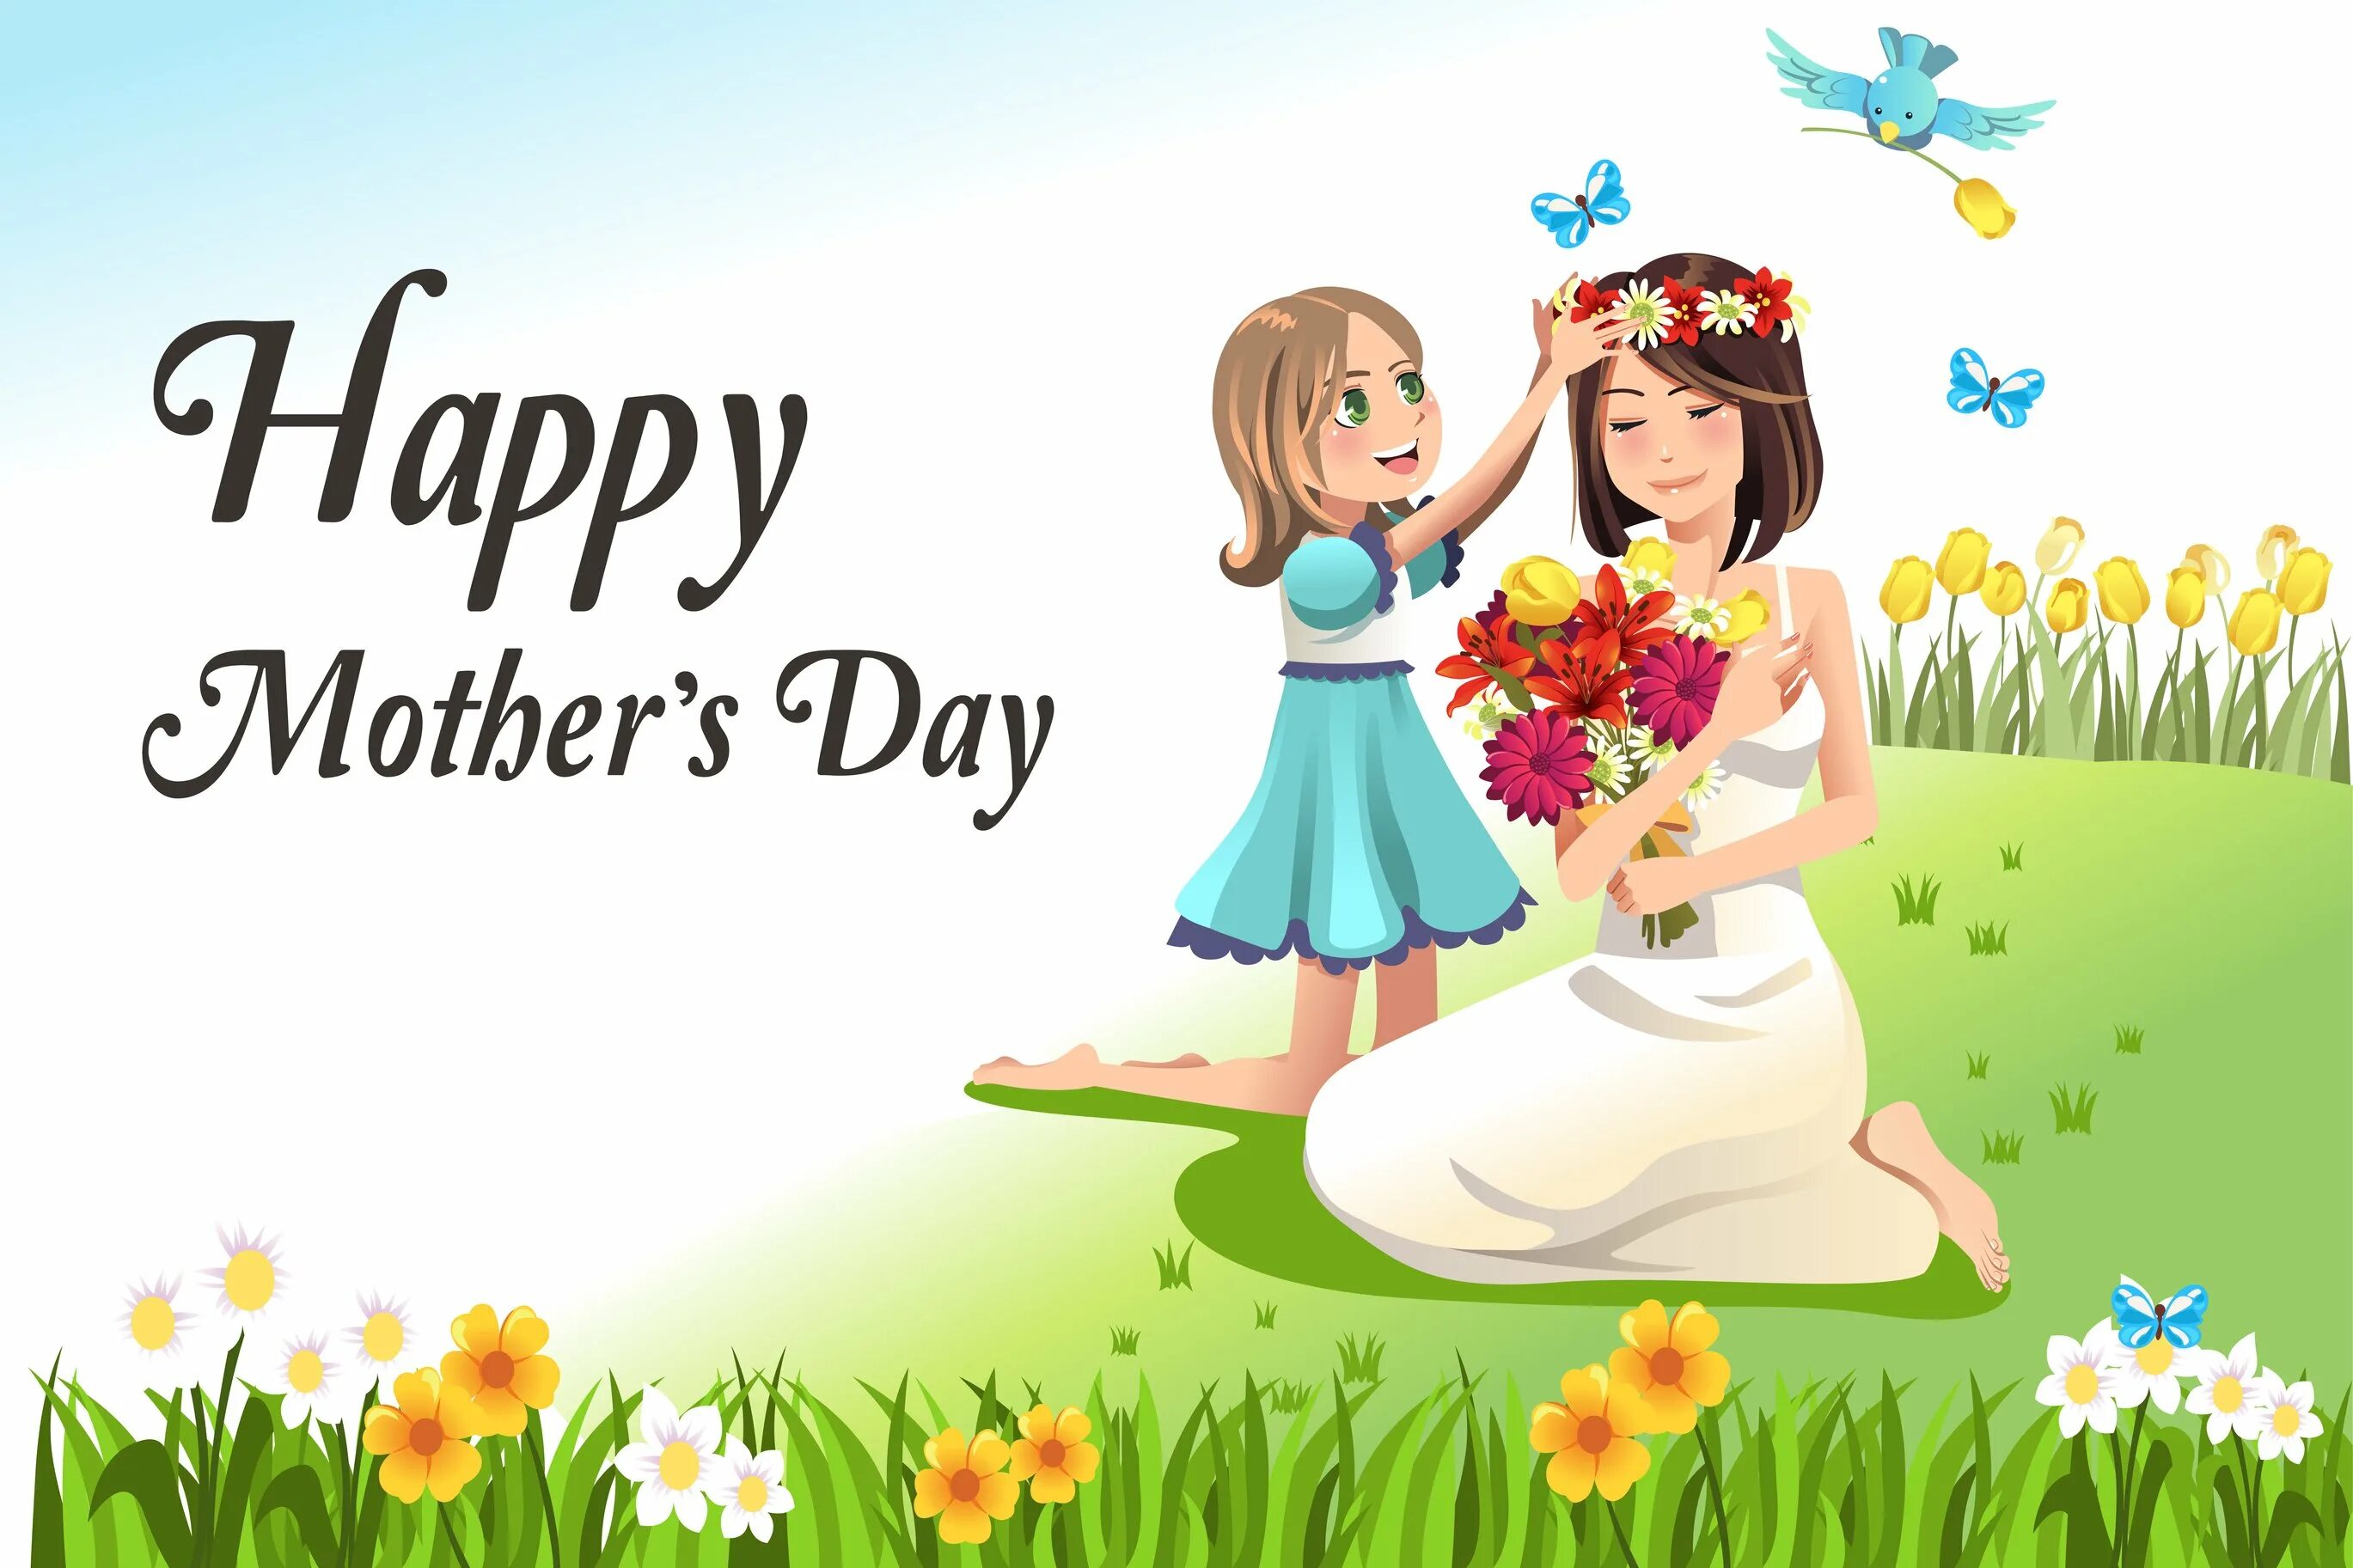 Тема недели мамочка моя. День матери. Мамин день. С днём матери картинки. День матери Международный праздник.